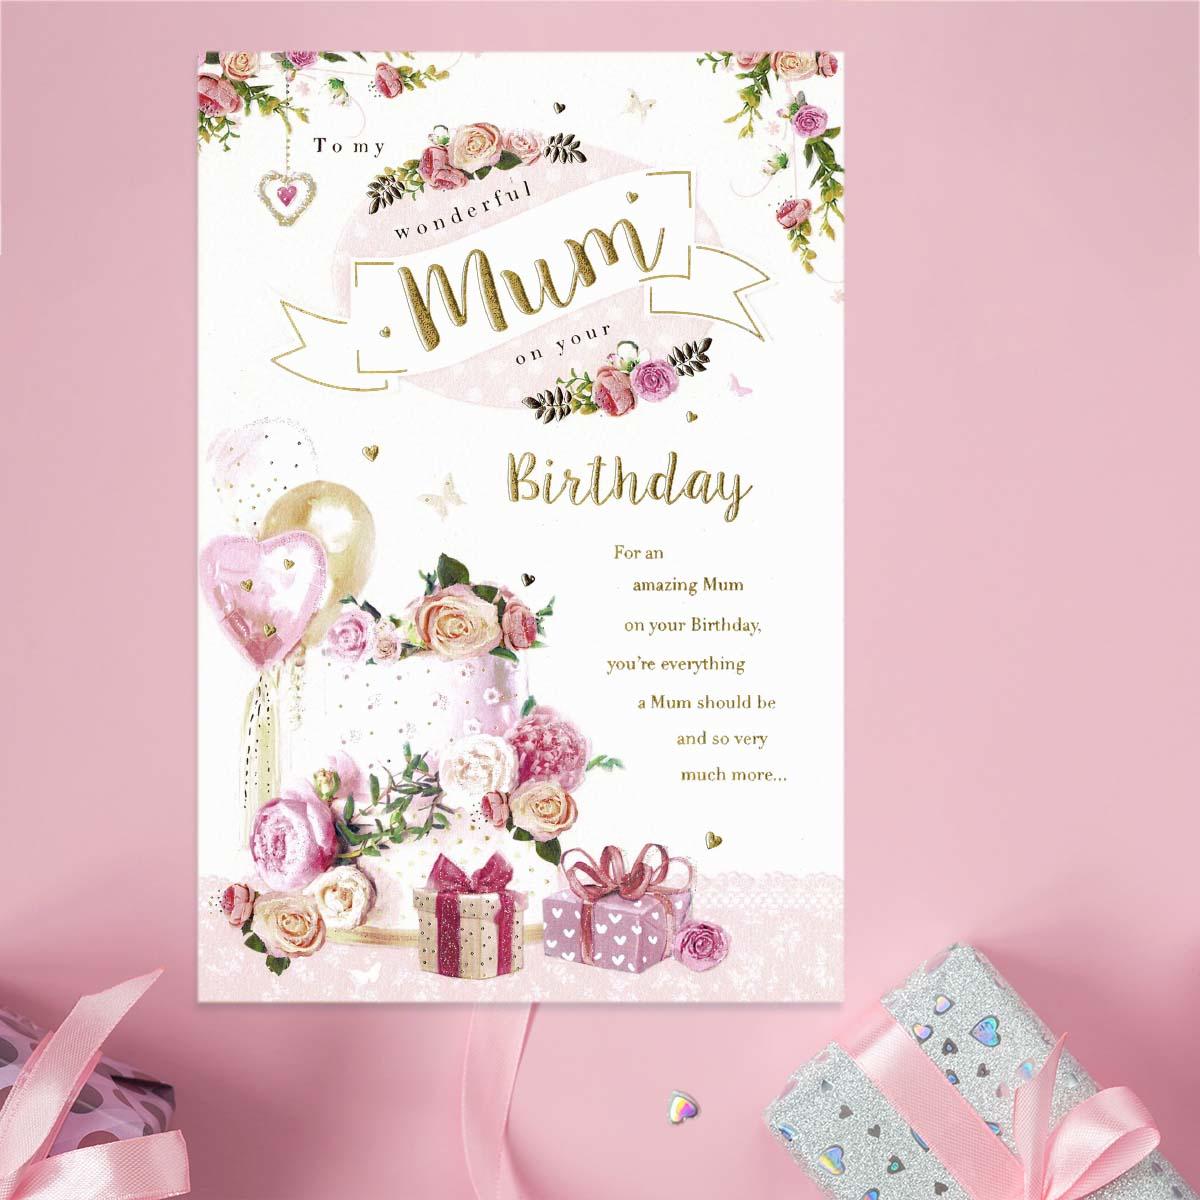 Image Showing Mum Birthday Card Displayed